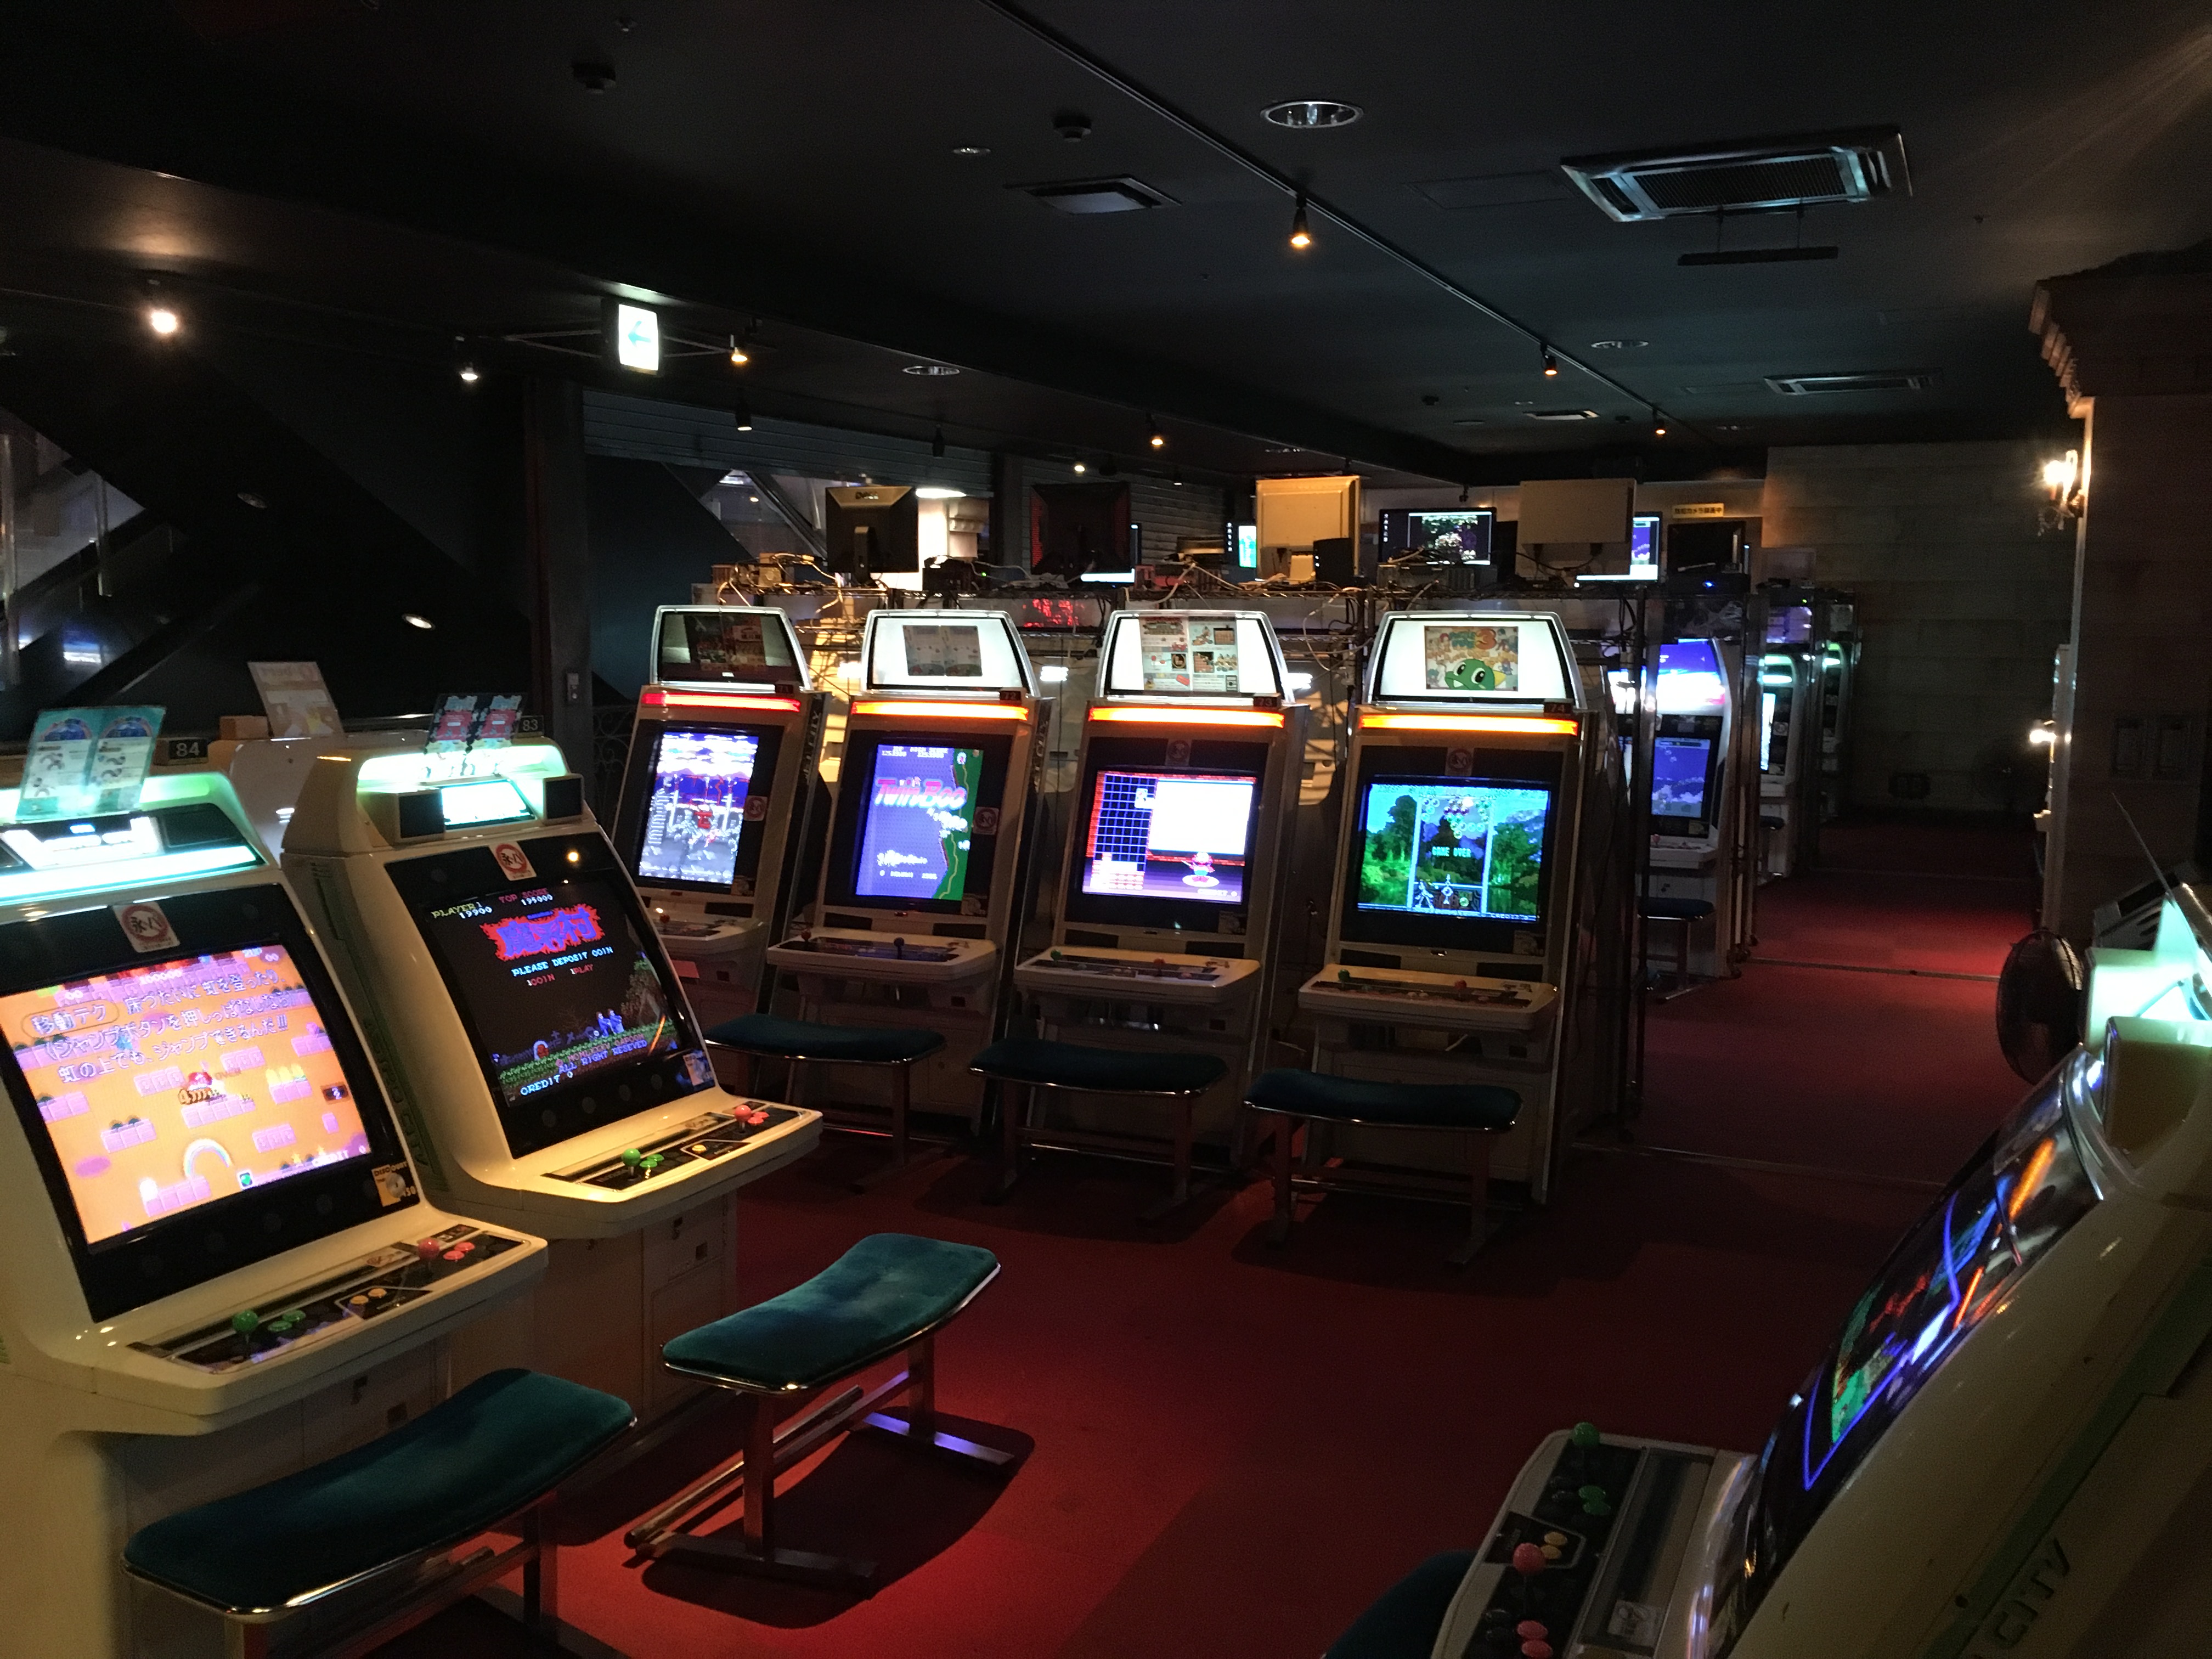 ウェアハウス川崎店レトロゲーム急増の裏側で活躍した レトゲ部 とは 19年11月17日閉店 ゲーム文化保存研究所